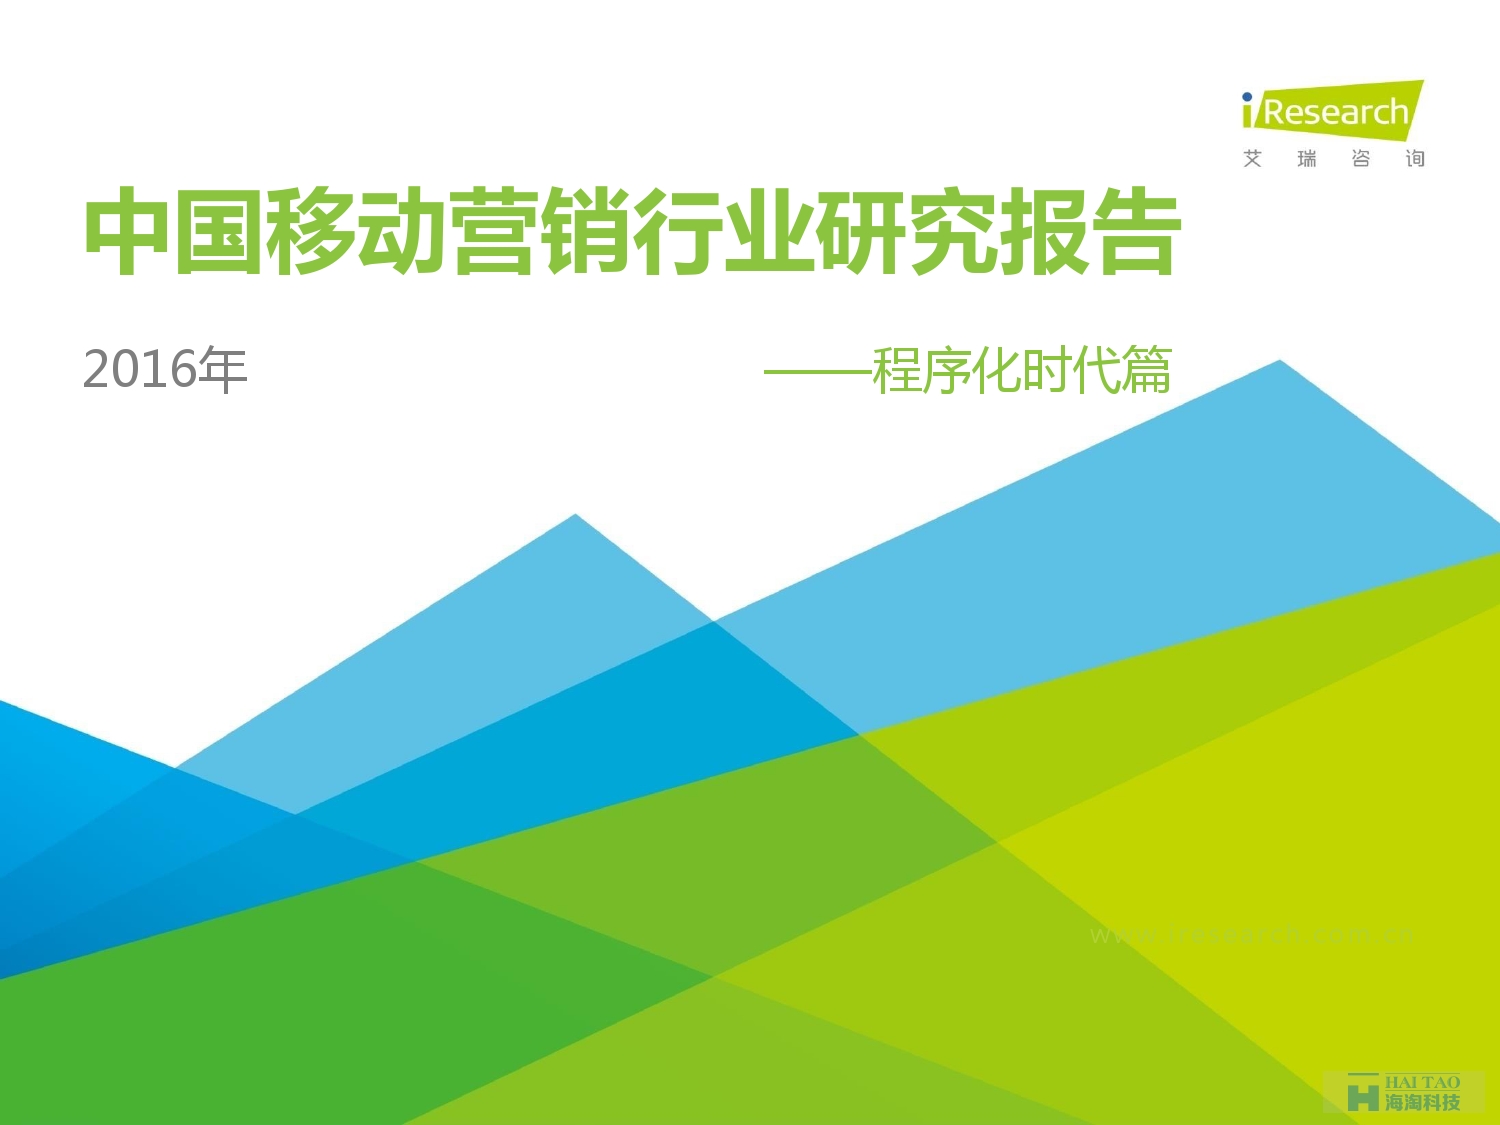 2016年中国移动营销行业研究报告——程序化时代篇_000001